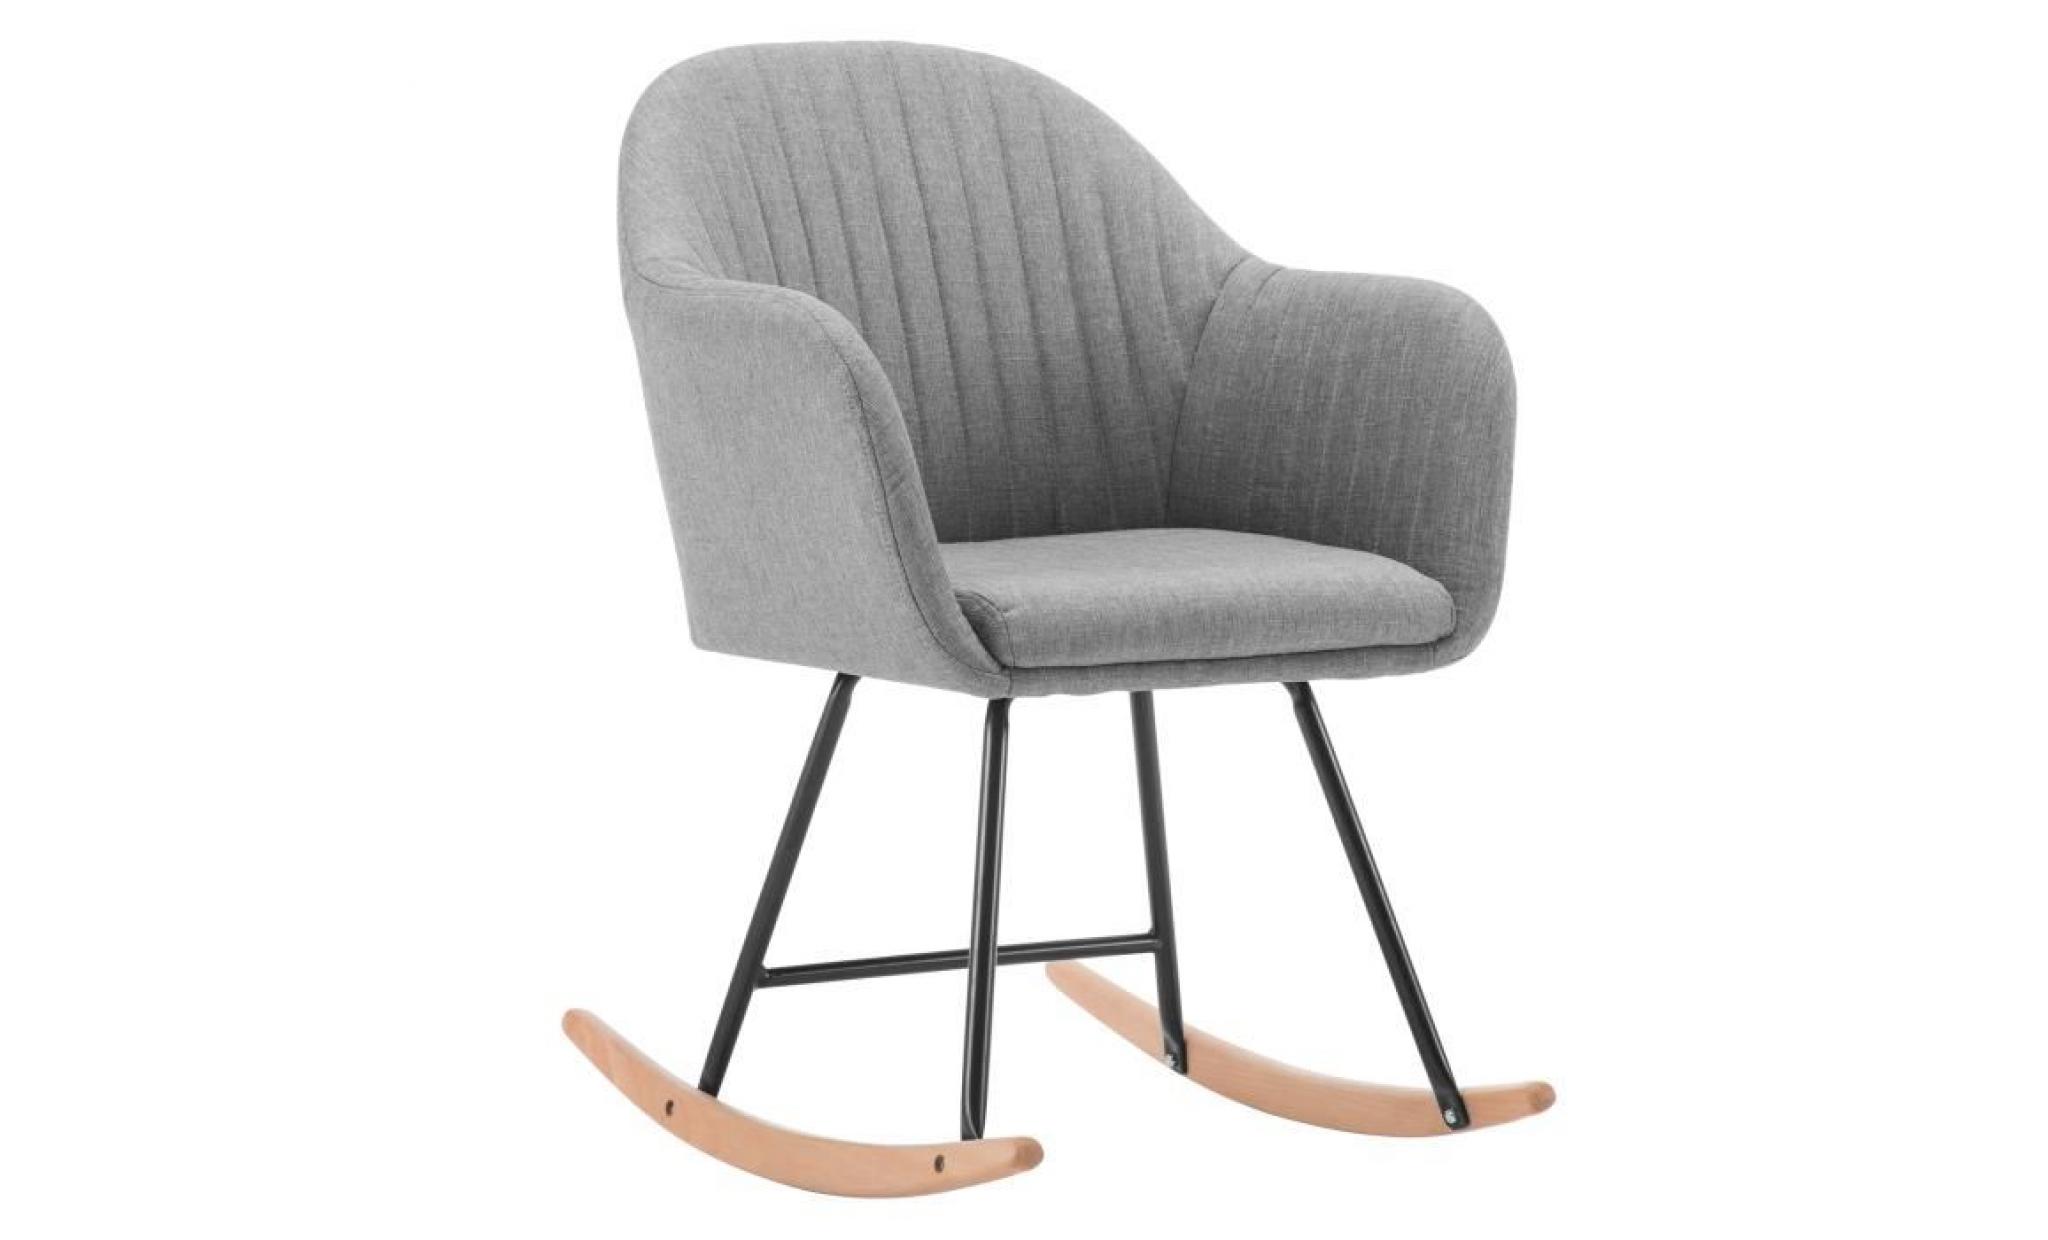 woltu fauteuil à bascule en lin,fauteuil de relaxation avec pieds en acier et patin en bois,chaise à bascule, gris clair